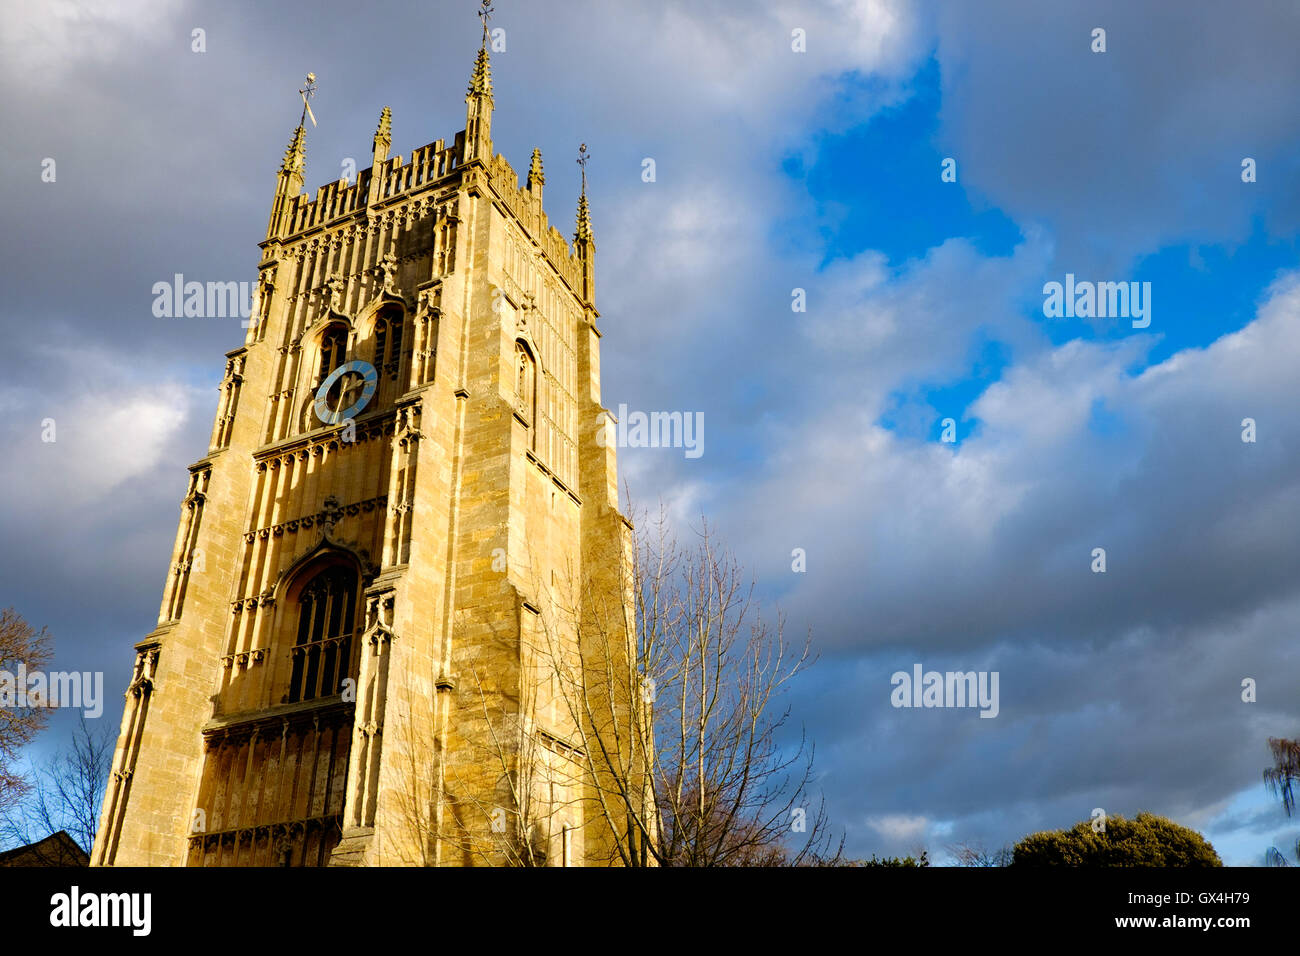 Église All Saints à Evesham, Angleterre Banque D'Images